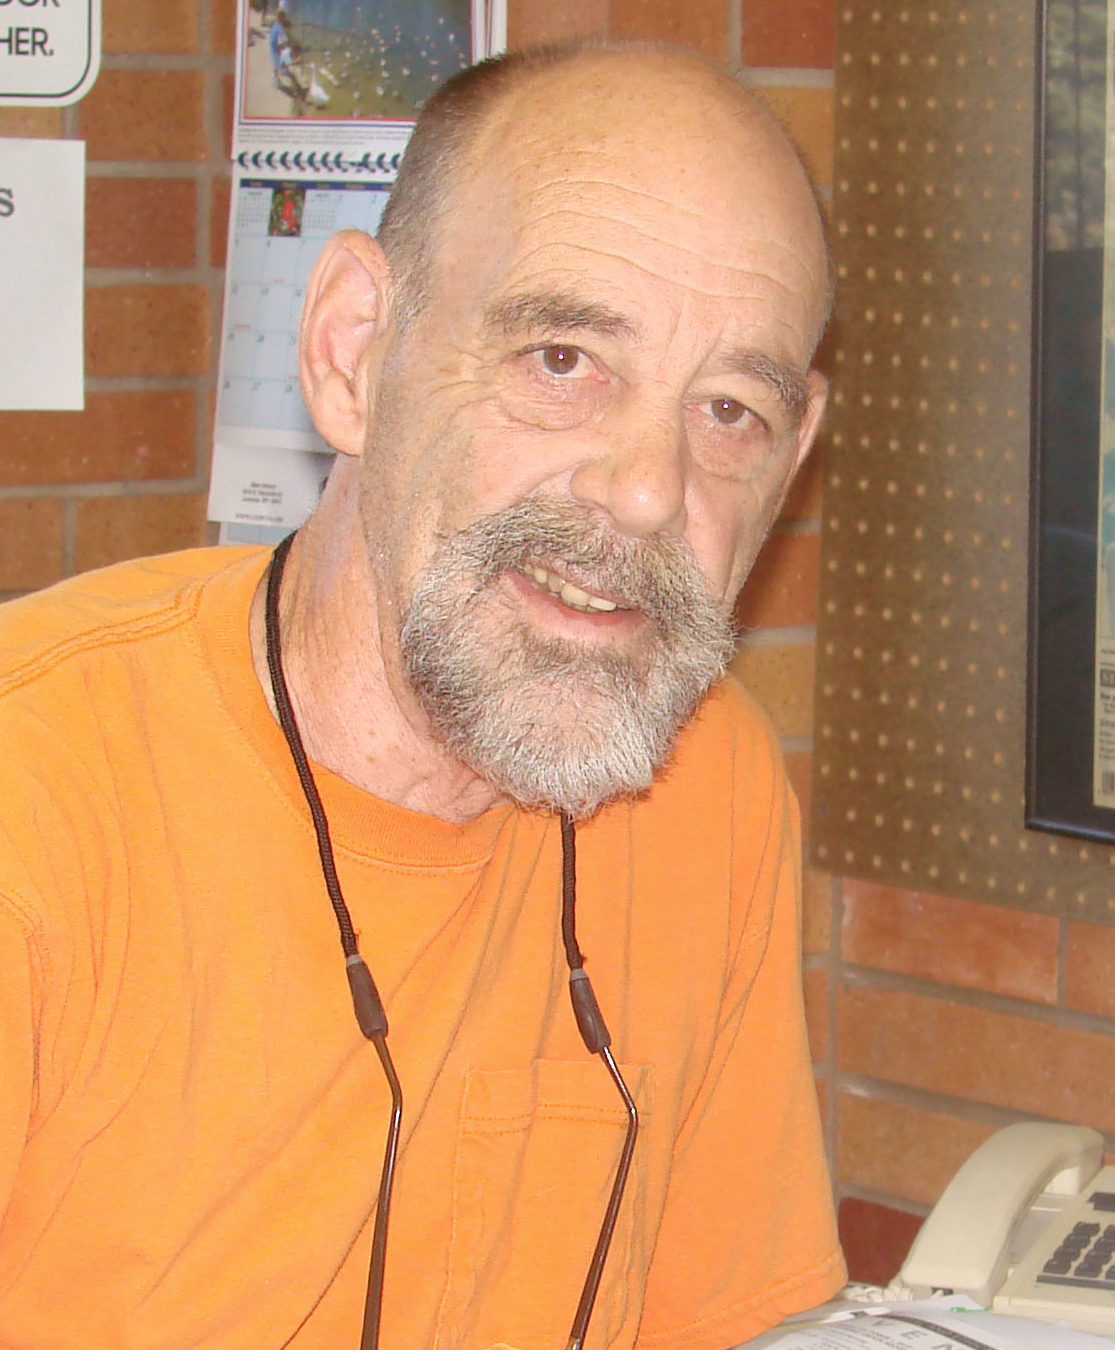 George Gladney pictured in orange shirt